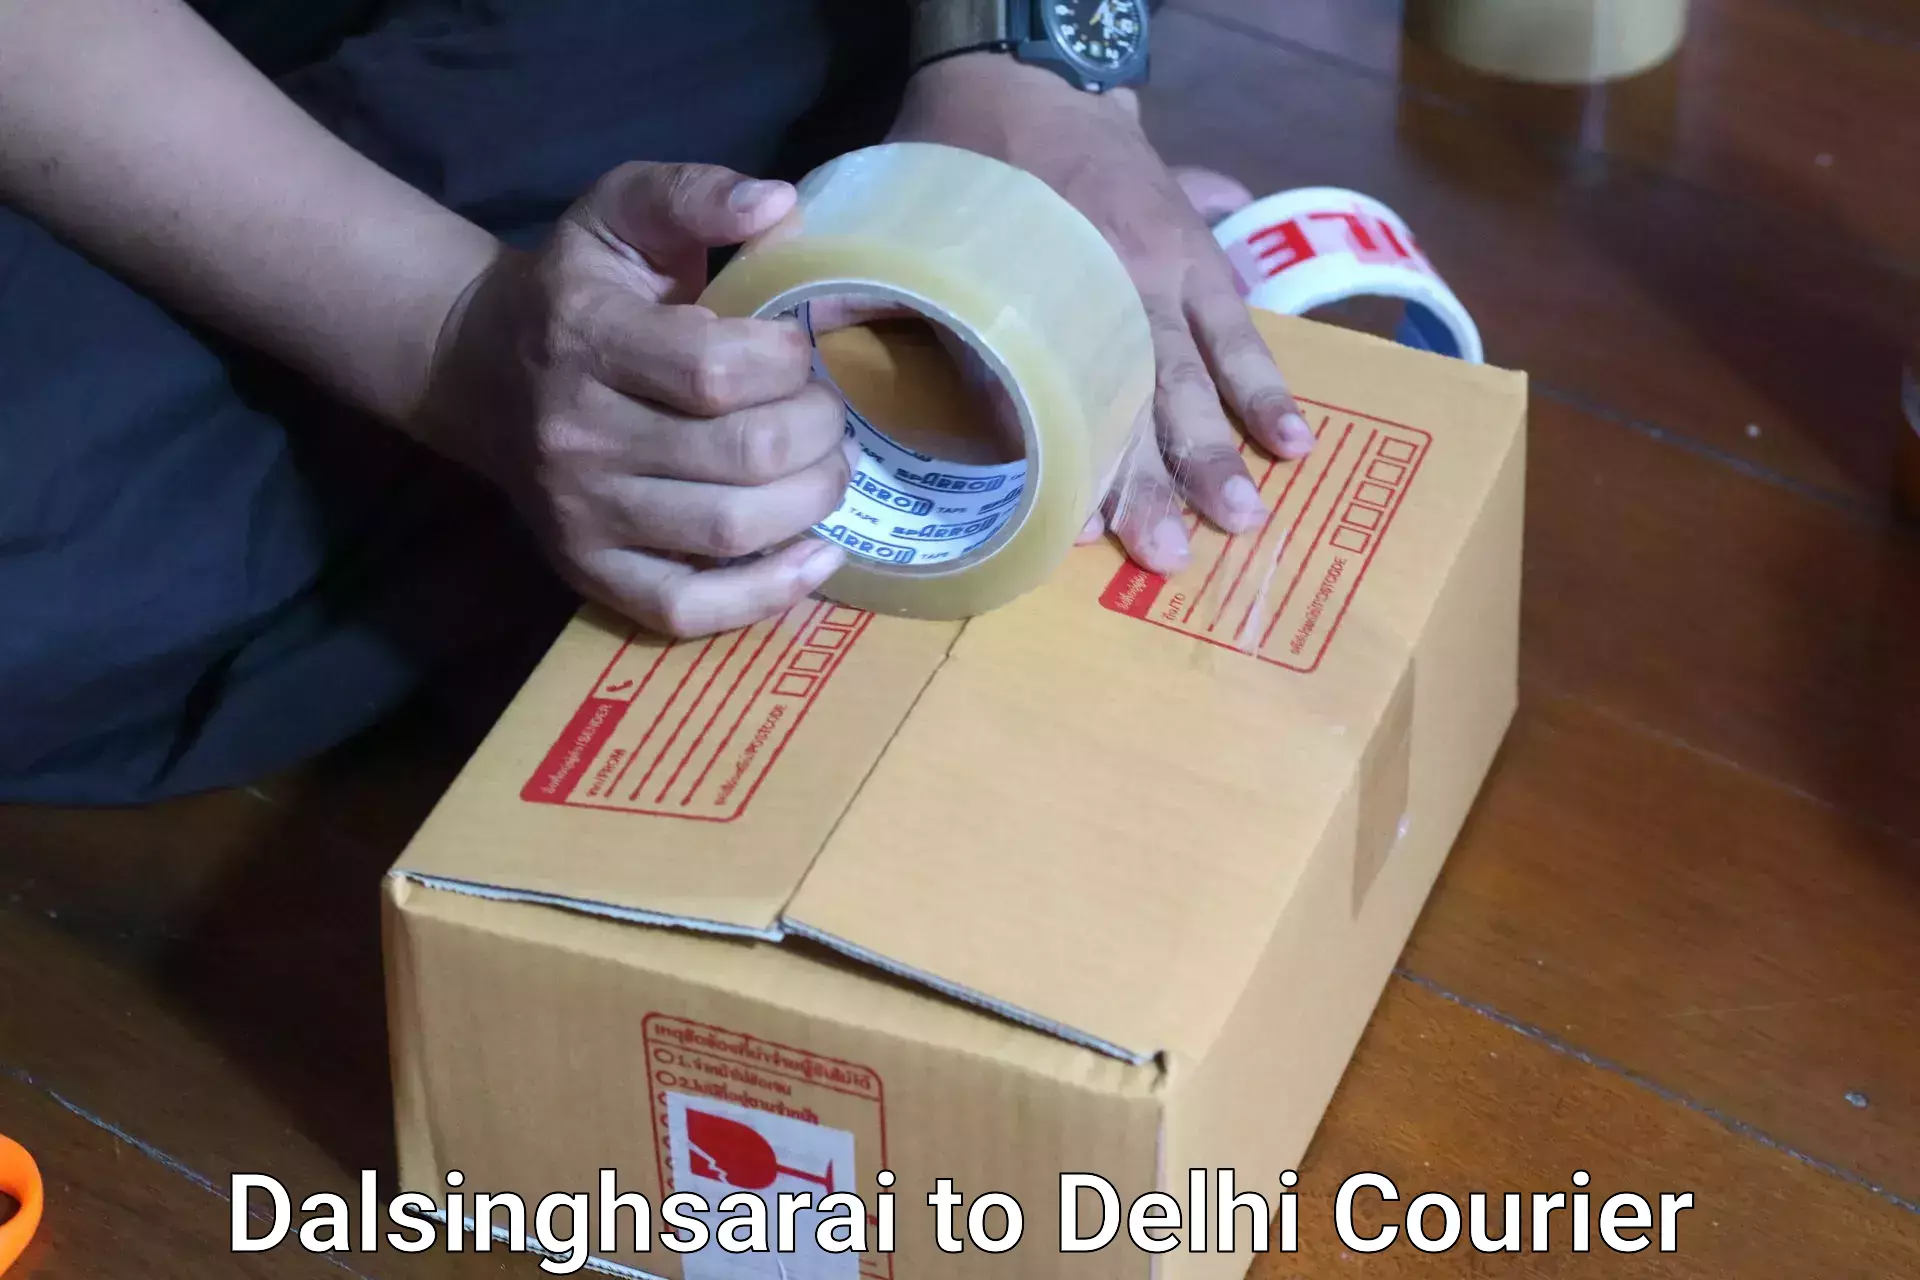 Baggage courier service Dalsinghsarai to Jamia Millia Islamia New Delhi